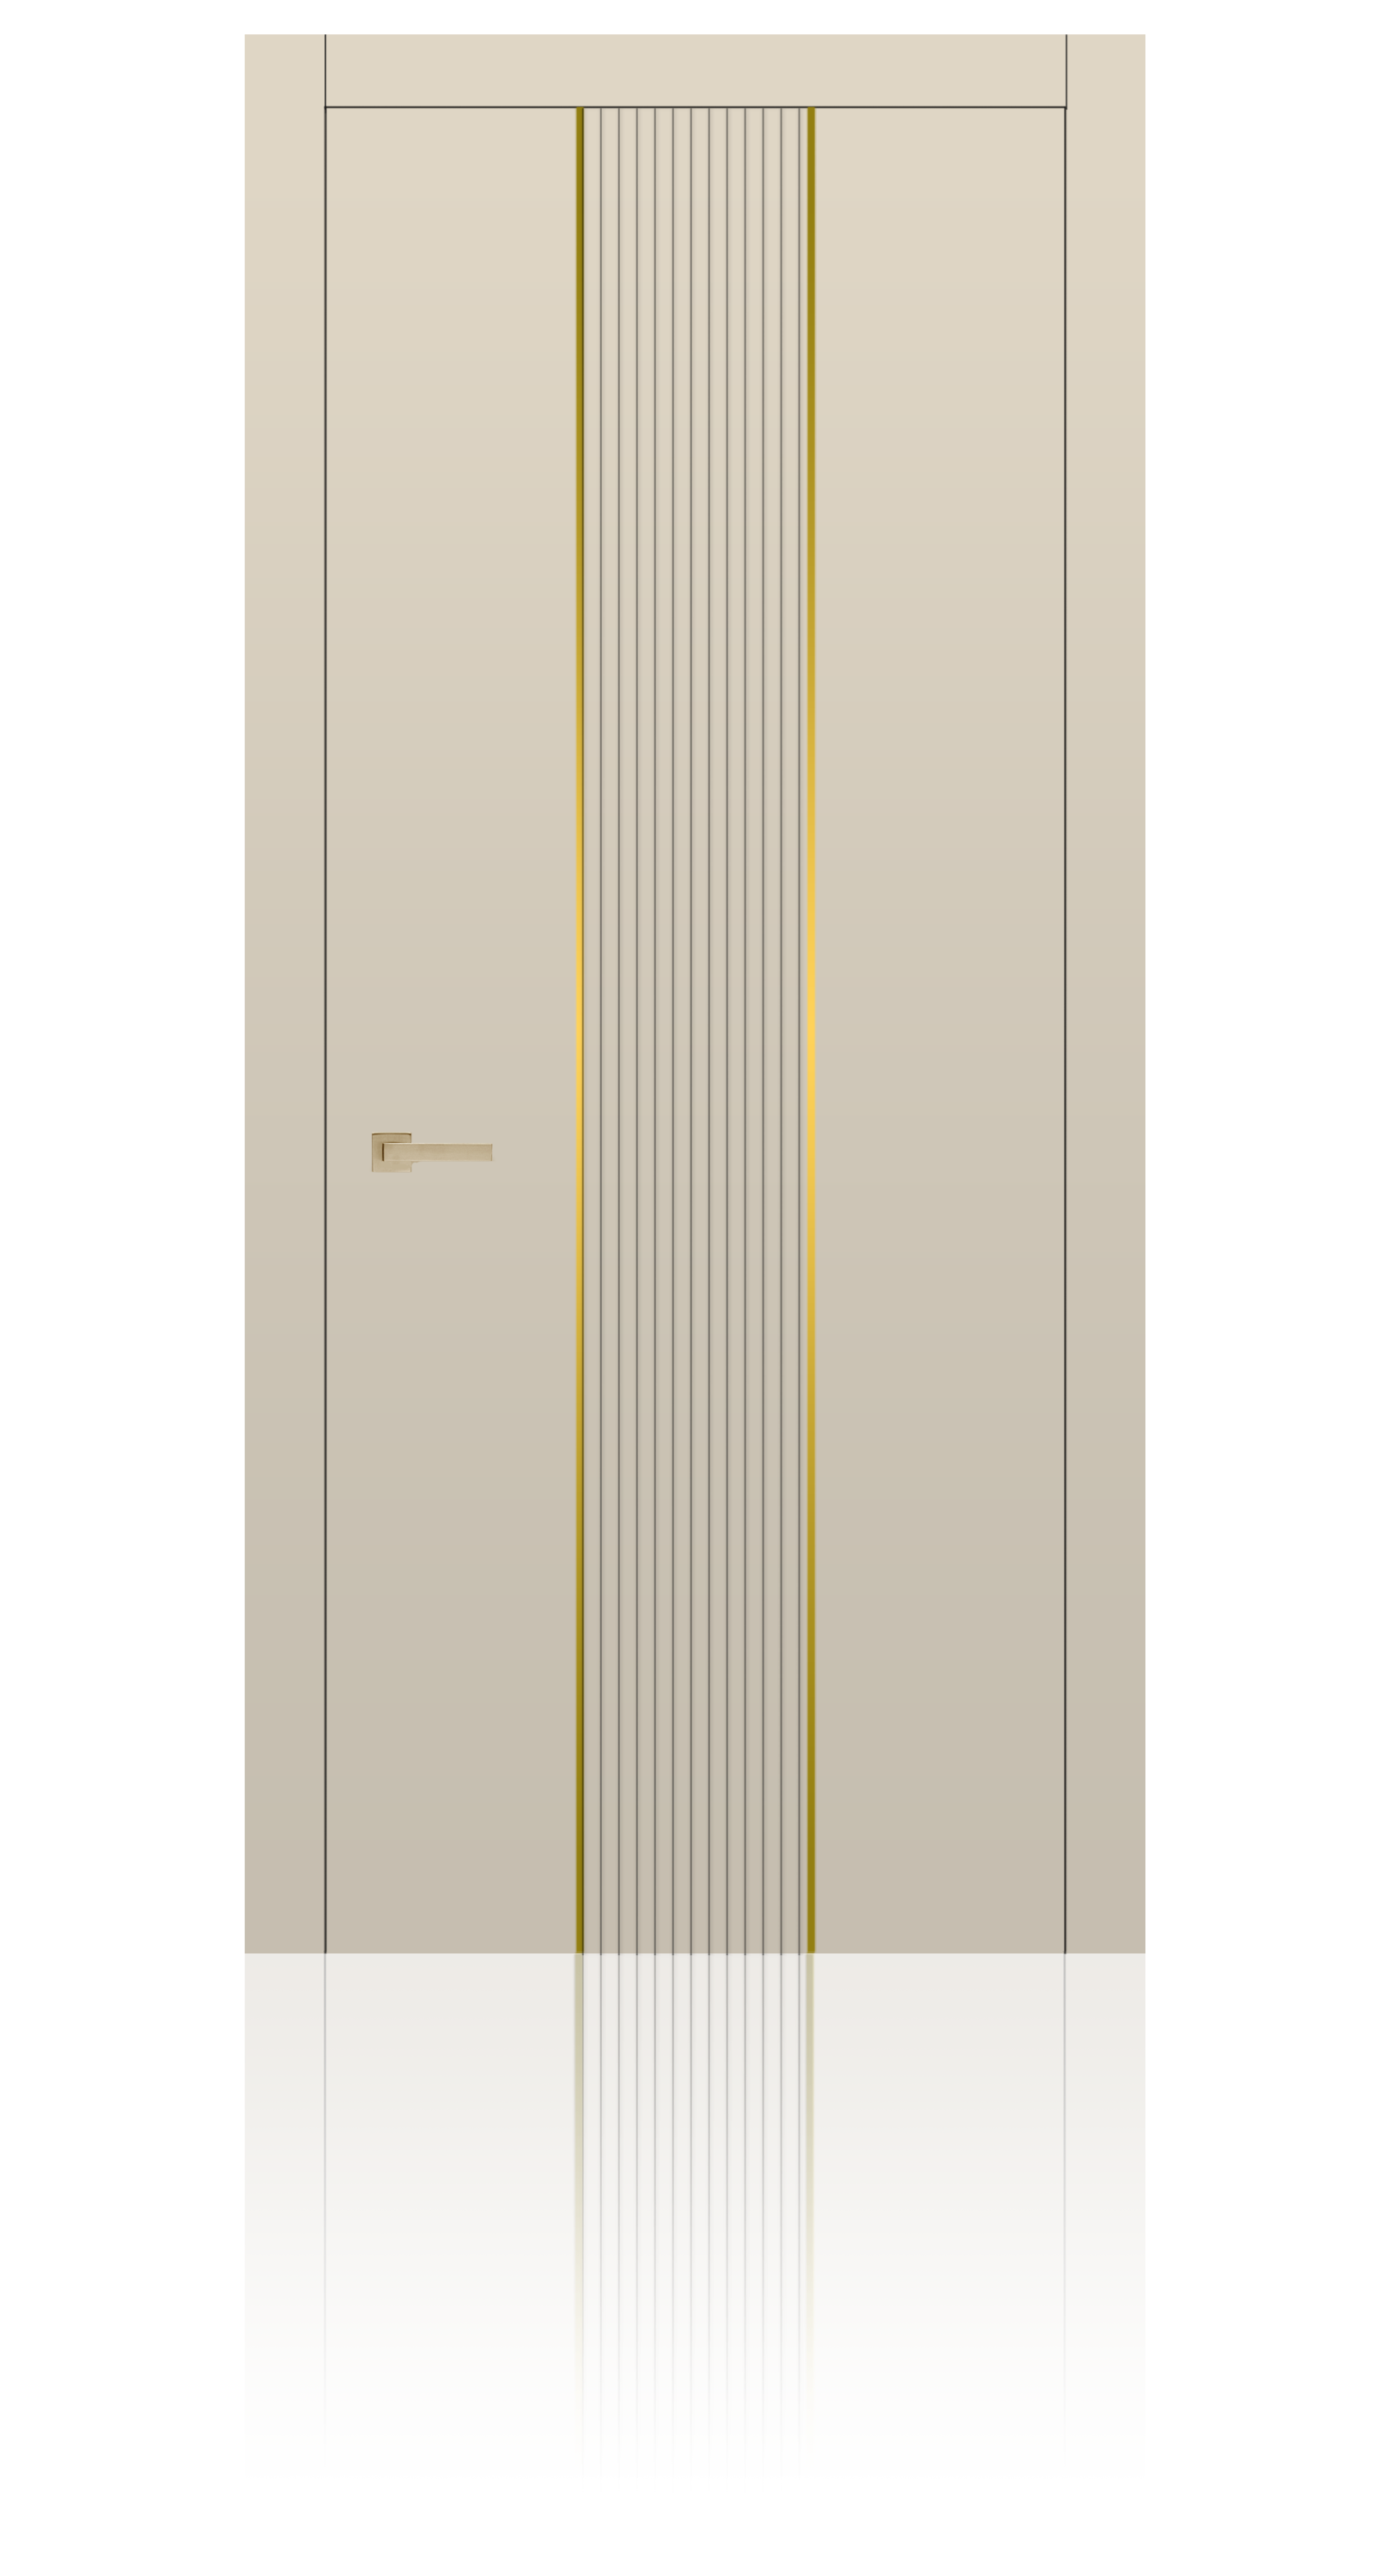 Межкомнатная дверь Урбан-4 глухая эмаль ral 1013 24959